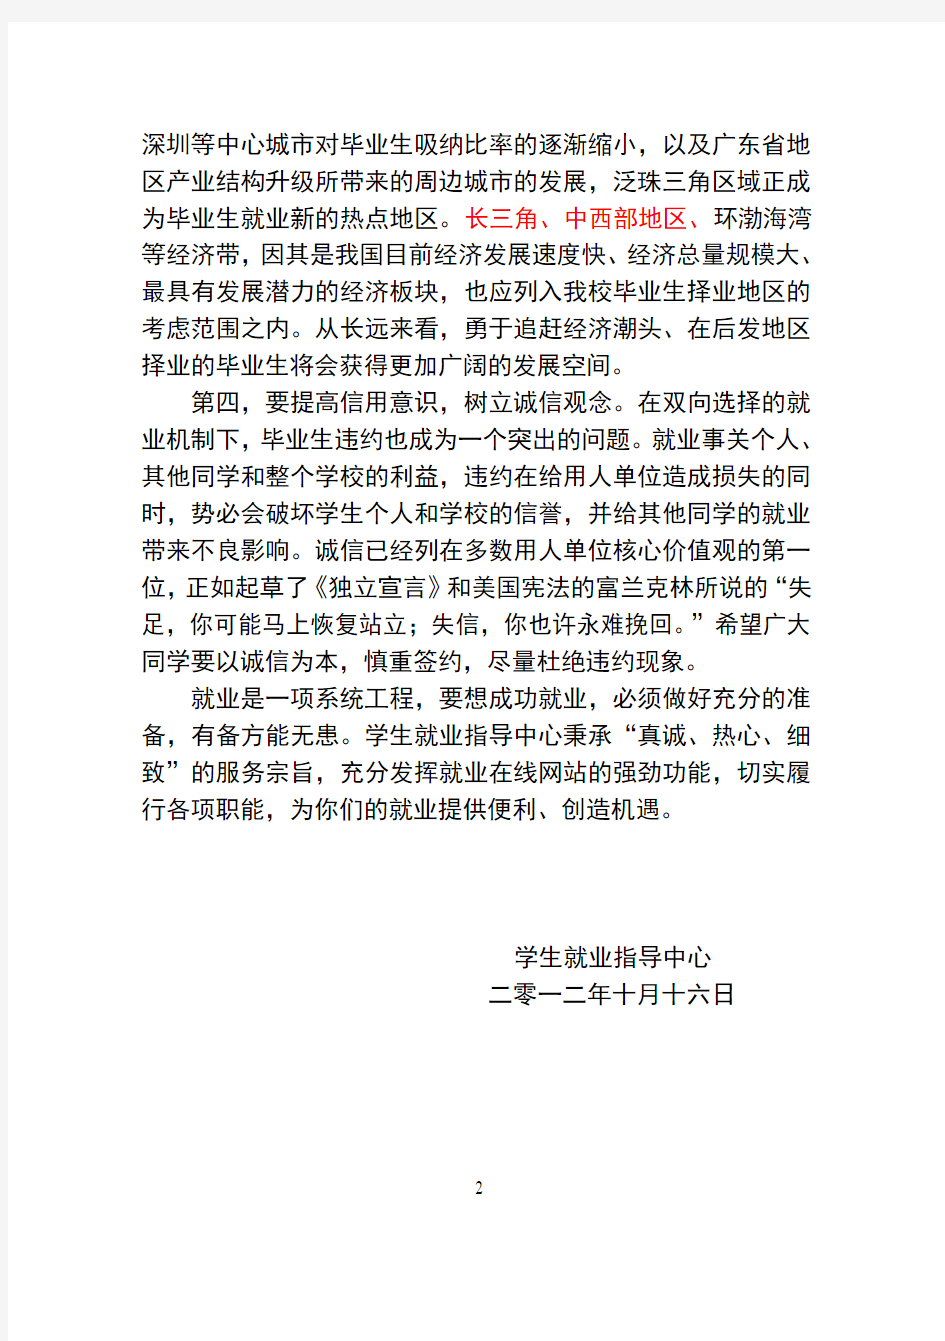 华南理工大学理学院2013届毕业生就业指导手册